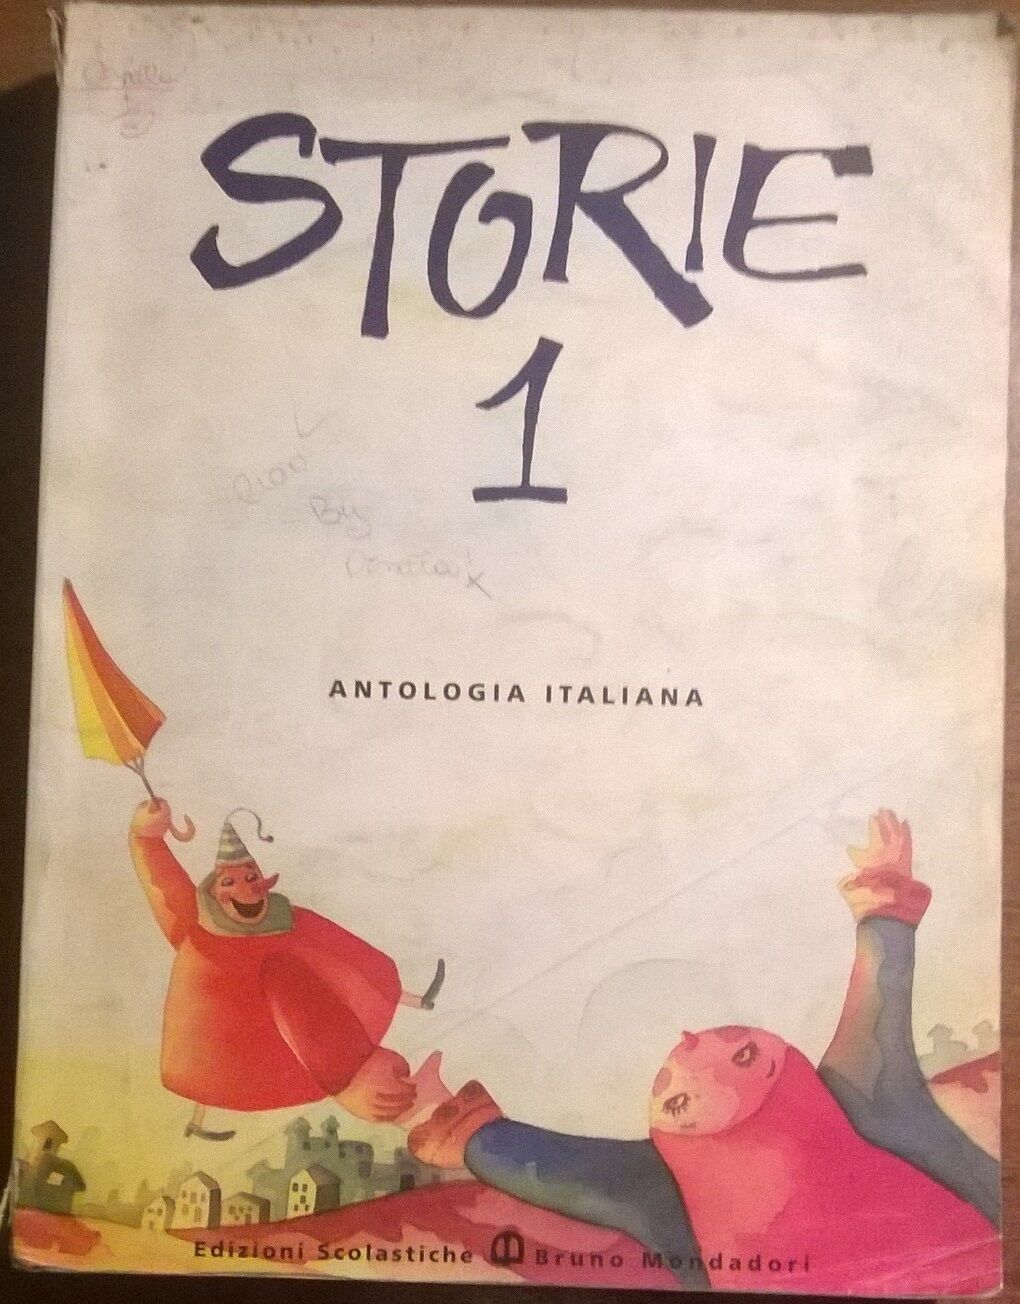 Storie 1 - Antologia italiana - Didak? - 2000, Scolastiche Bruno Mondadori - L 